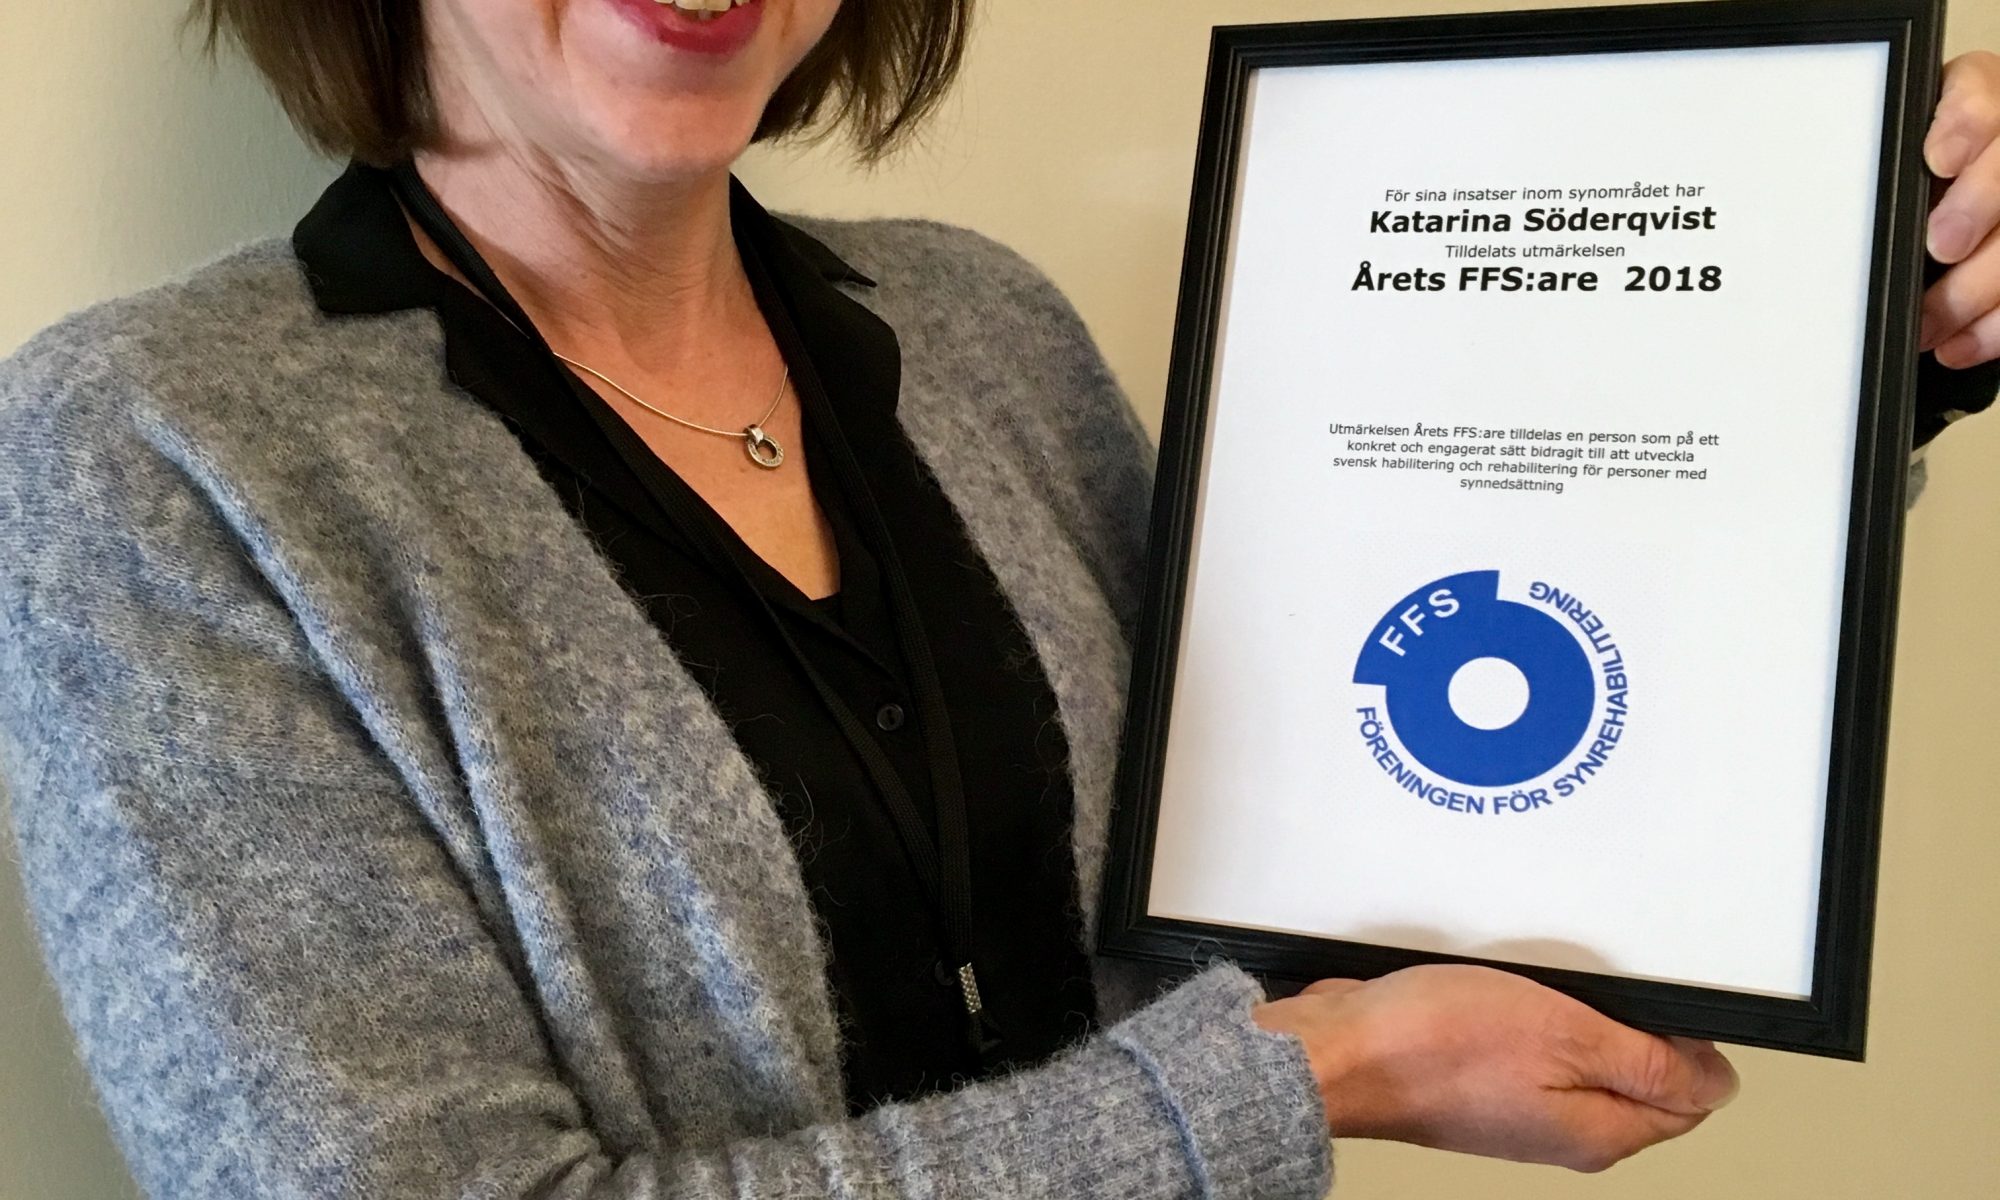 Foto av Katarina som håller upp den inramade utmärkelsen/diplomet årets Ffs:are 2018